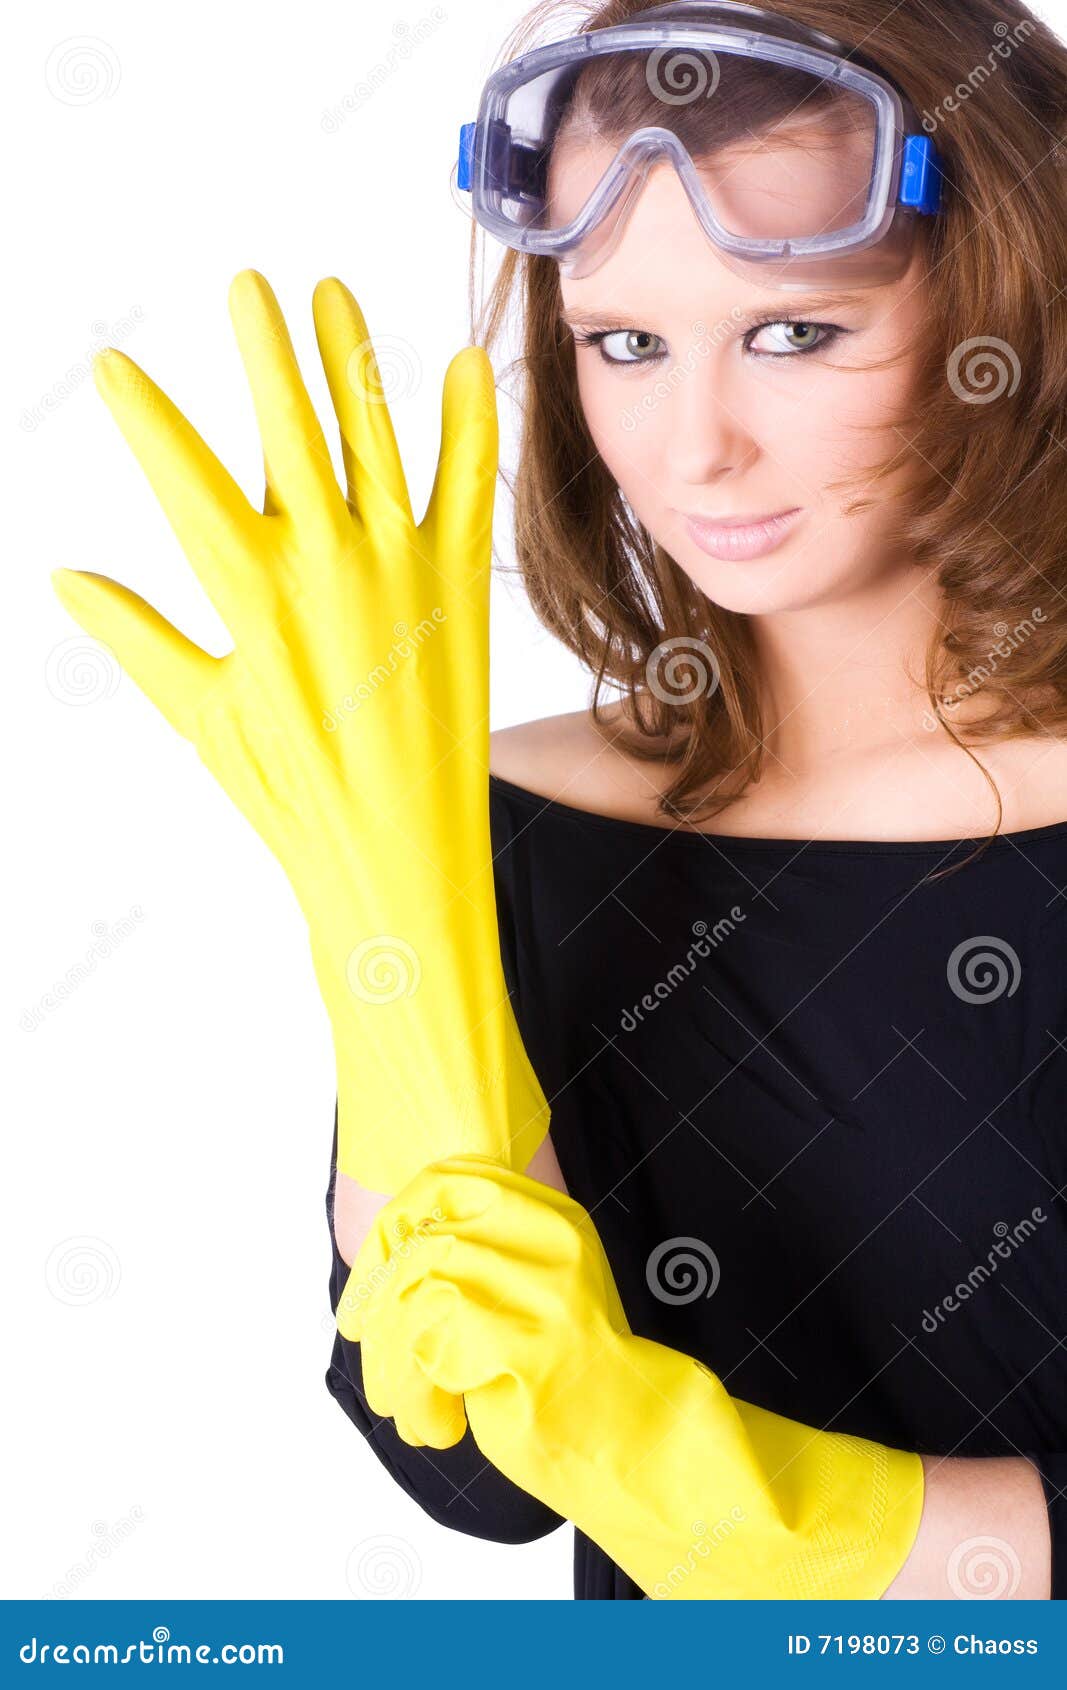 She is wearing a long. Женщины в резиновых перчатках. Женщина в желтых перчатках. Женщина в резиновых перчаток. Девушки в хозяйственных резиновых перчатках.